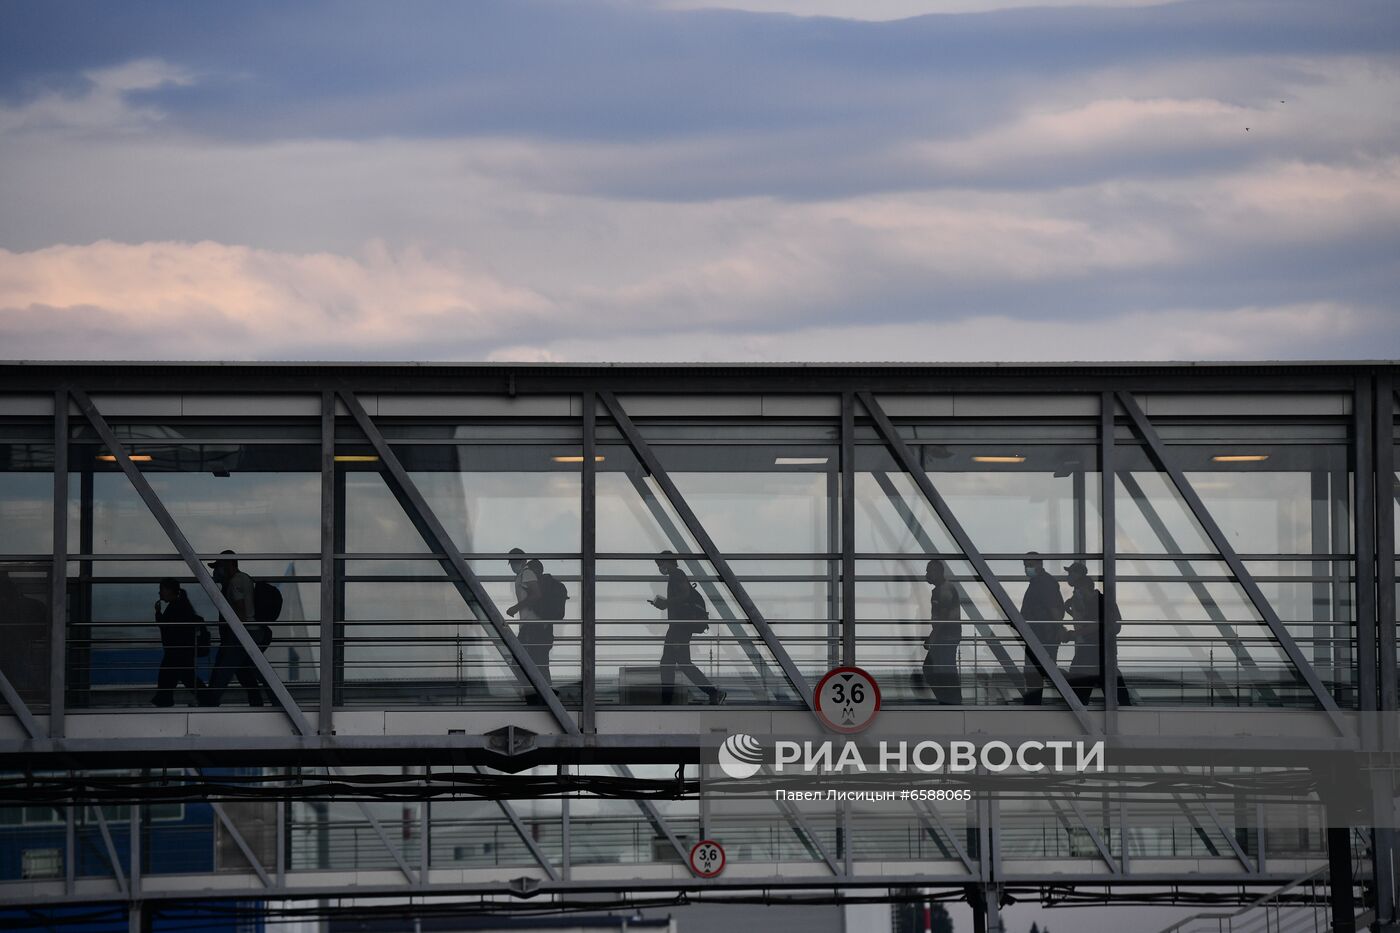 Возобновление авиасообщения между Дюссельдорфом и Екатеринбургом